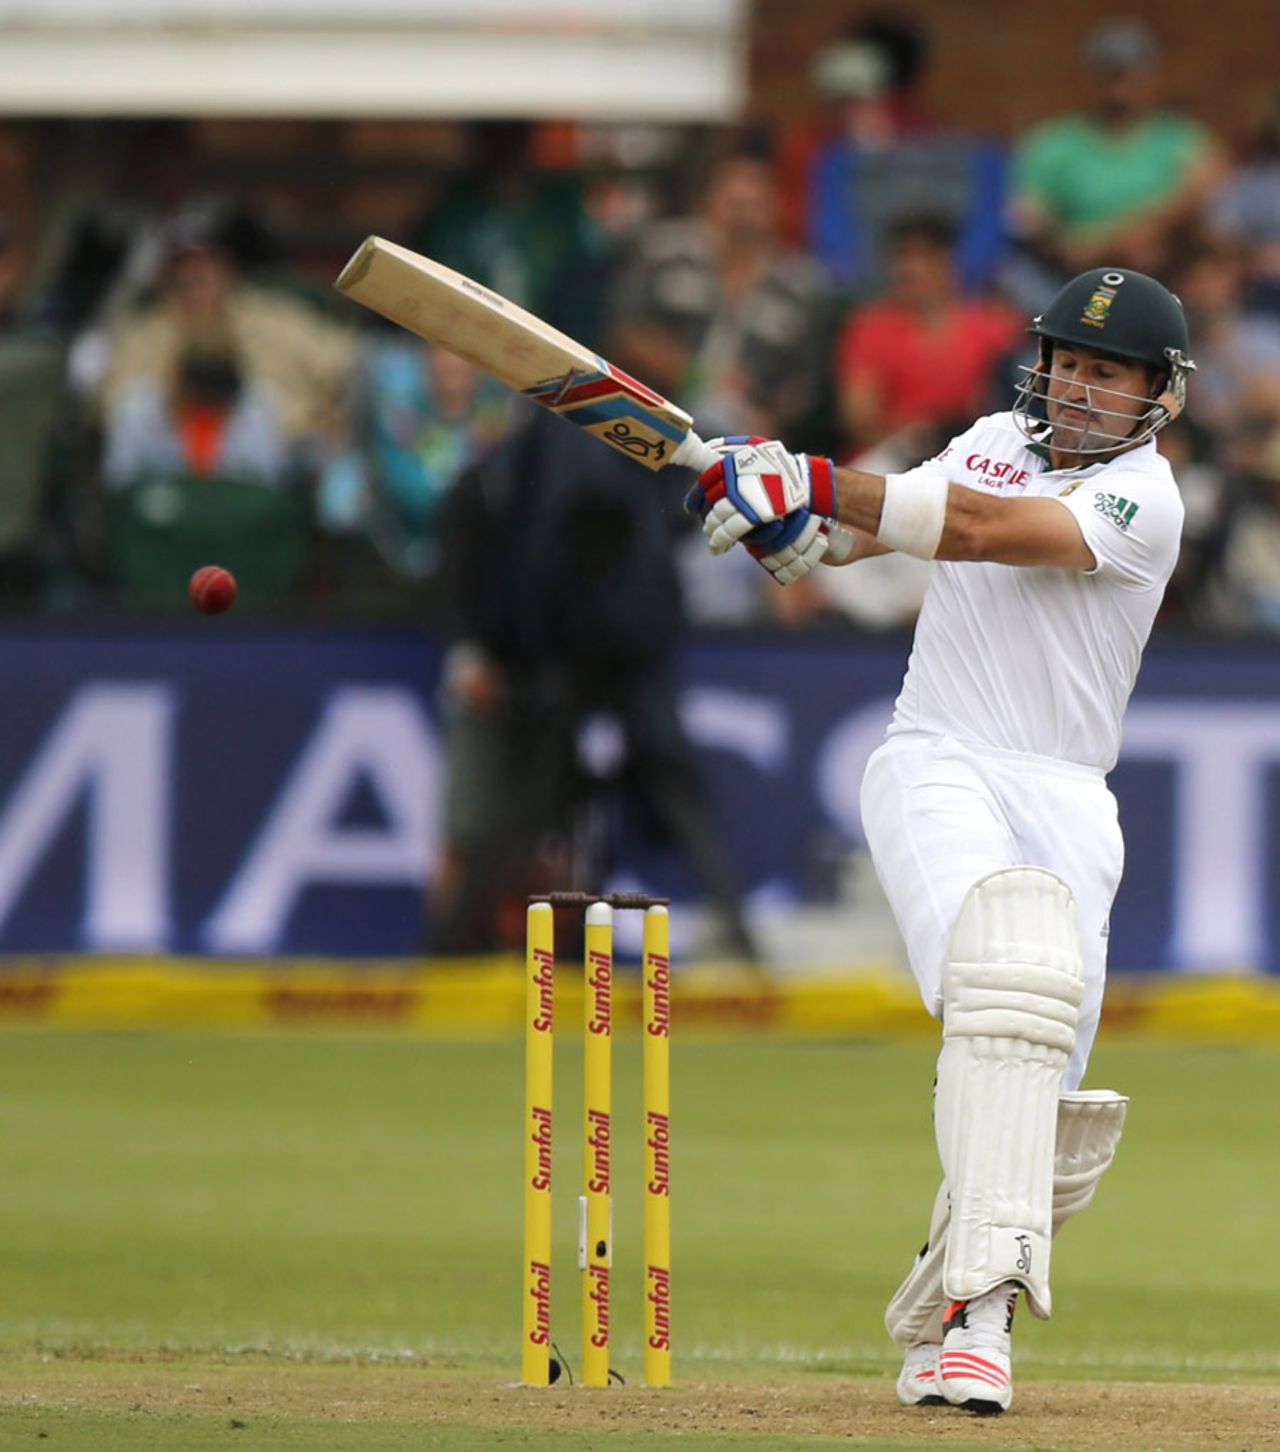 Dean Elgar pulls away, South Africa v West Indies, 2nd Test, Port Elizabeth, 1st day, December 26, 2014